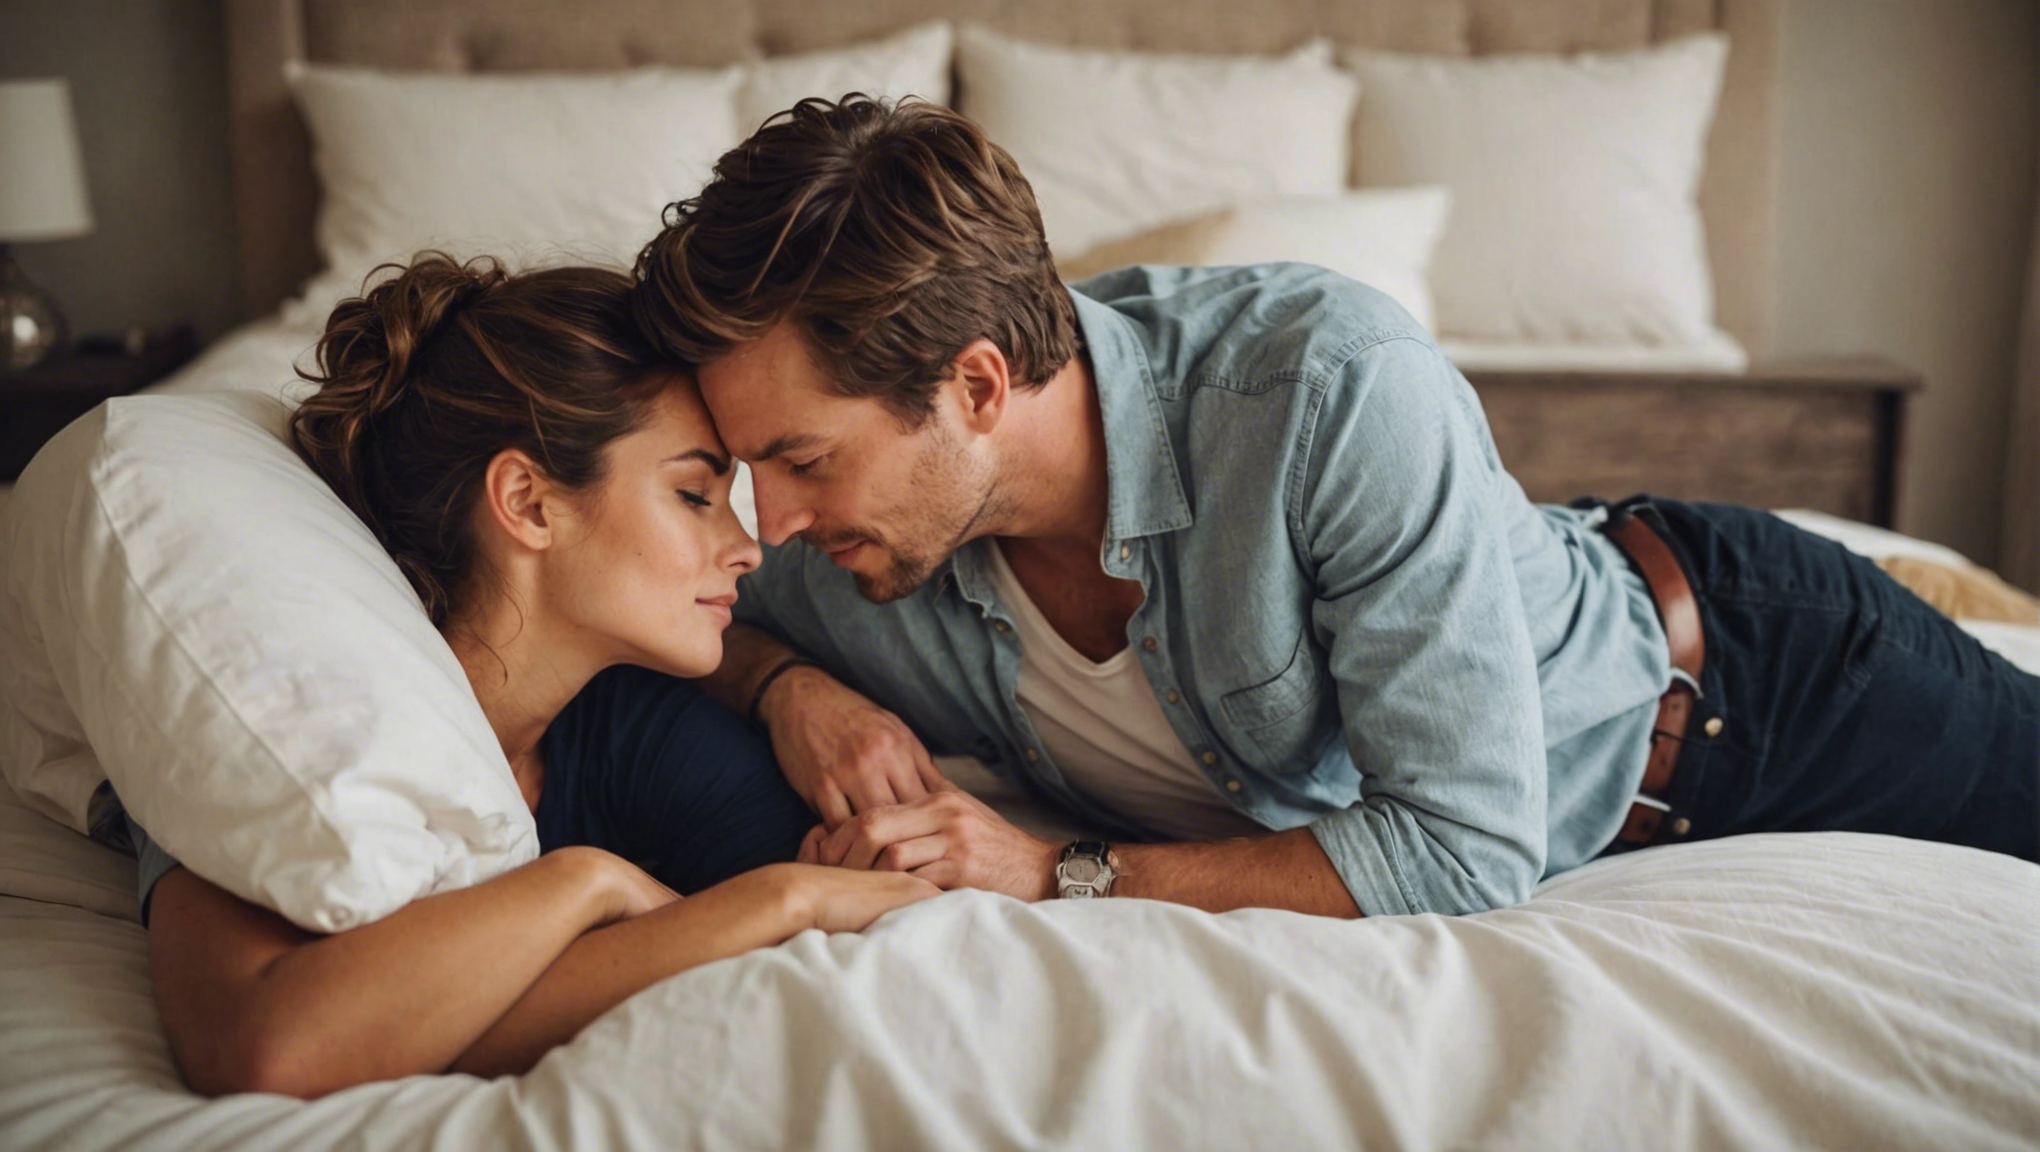 découvrez si les couples amoureux dorment mieux ensemble et les bienfaits du sommeil partagé dans cette étude sur la qualité du sommeil des couples.